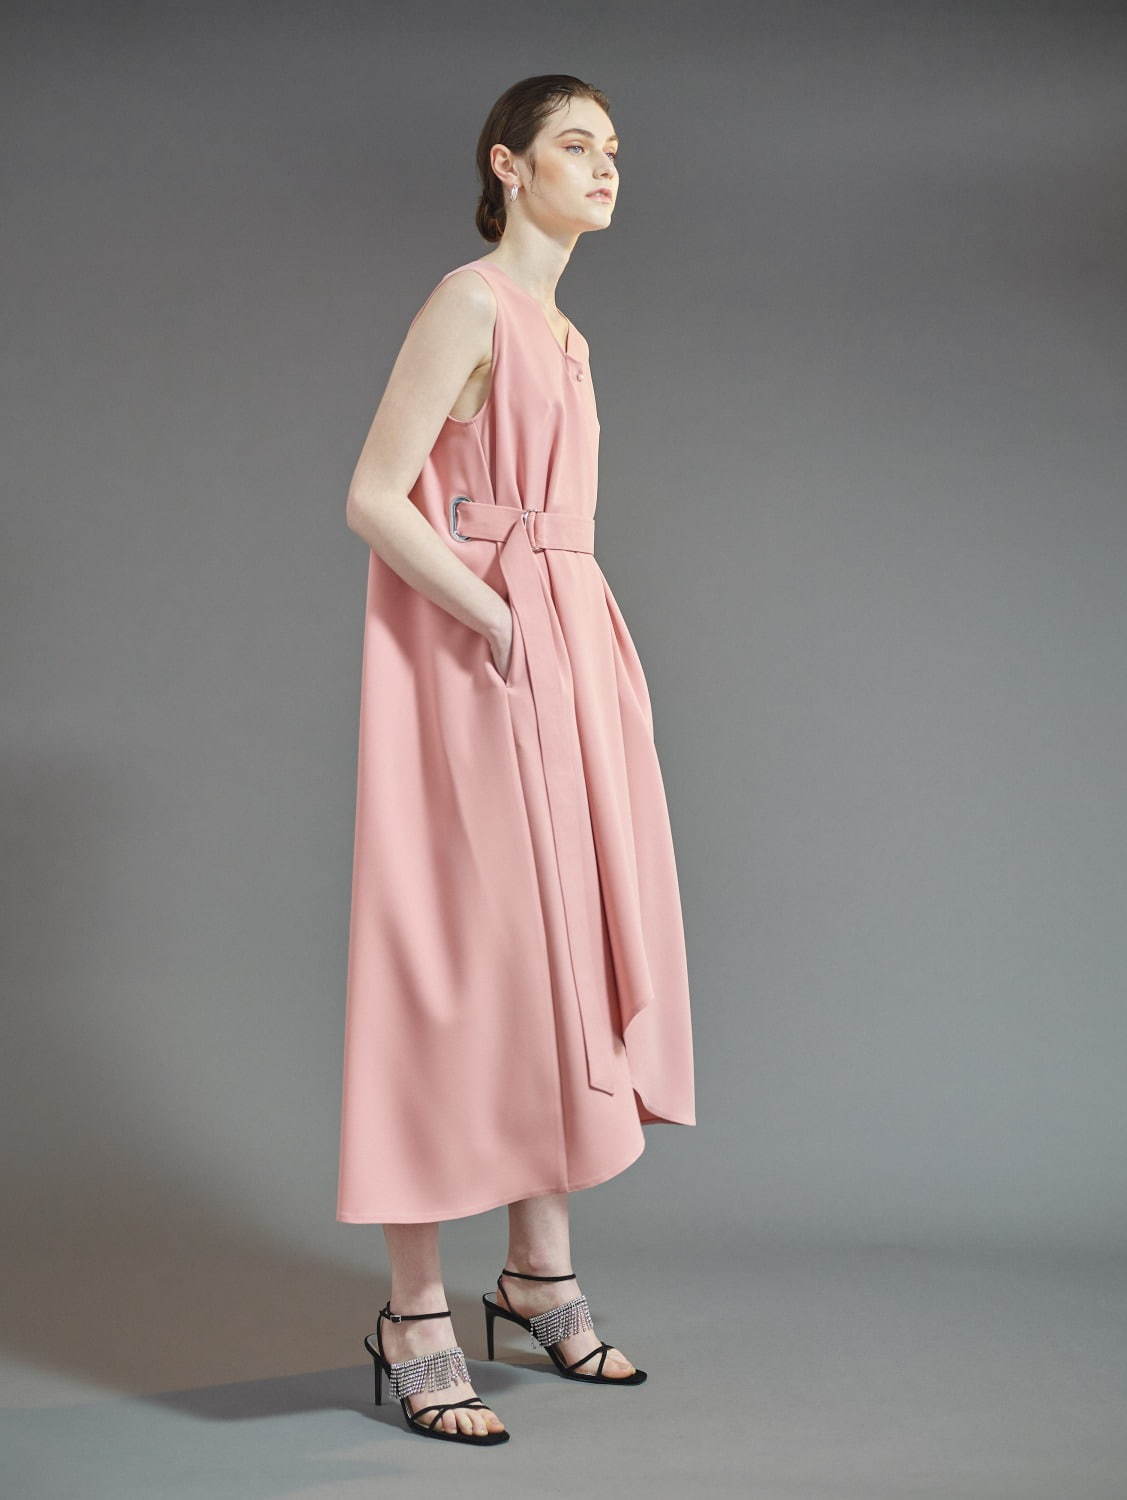 ヨウヘイ オオノ ドレスライン(YOHEI OHNO Dress Line) 2020-21年秋冬ウィメンズコレクション  - 写真14